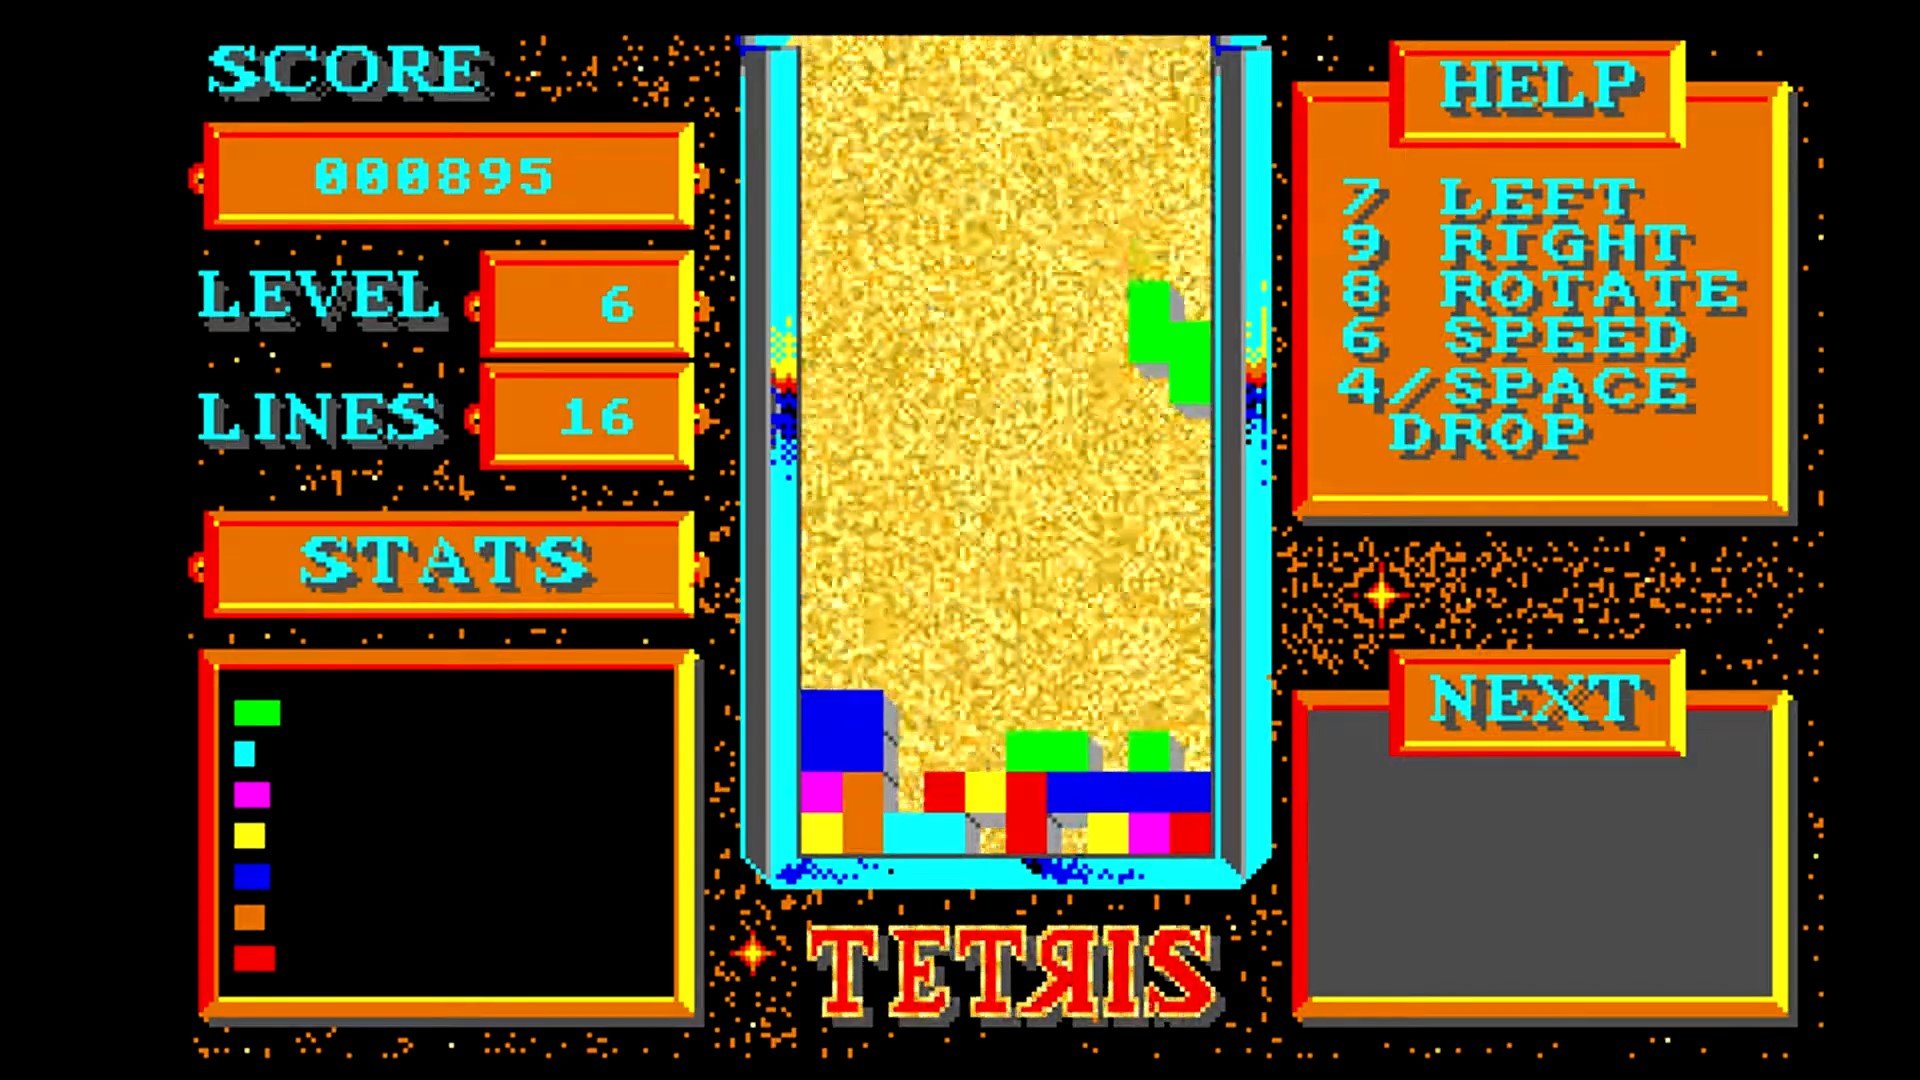 Tetris rodando no Amiga, de 1988.